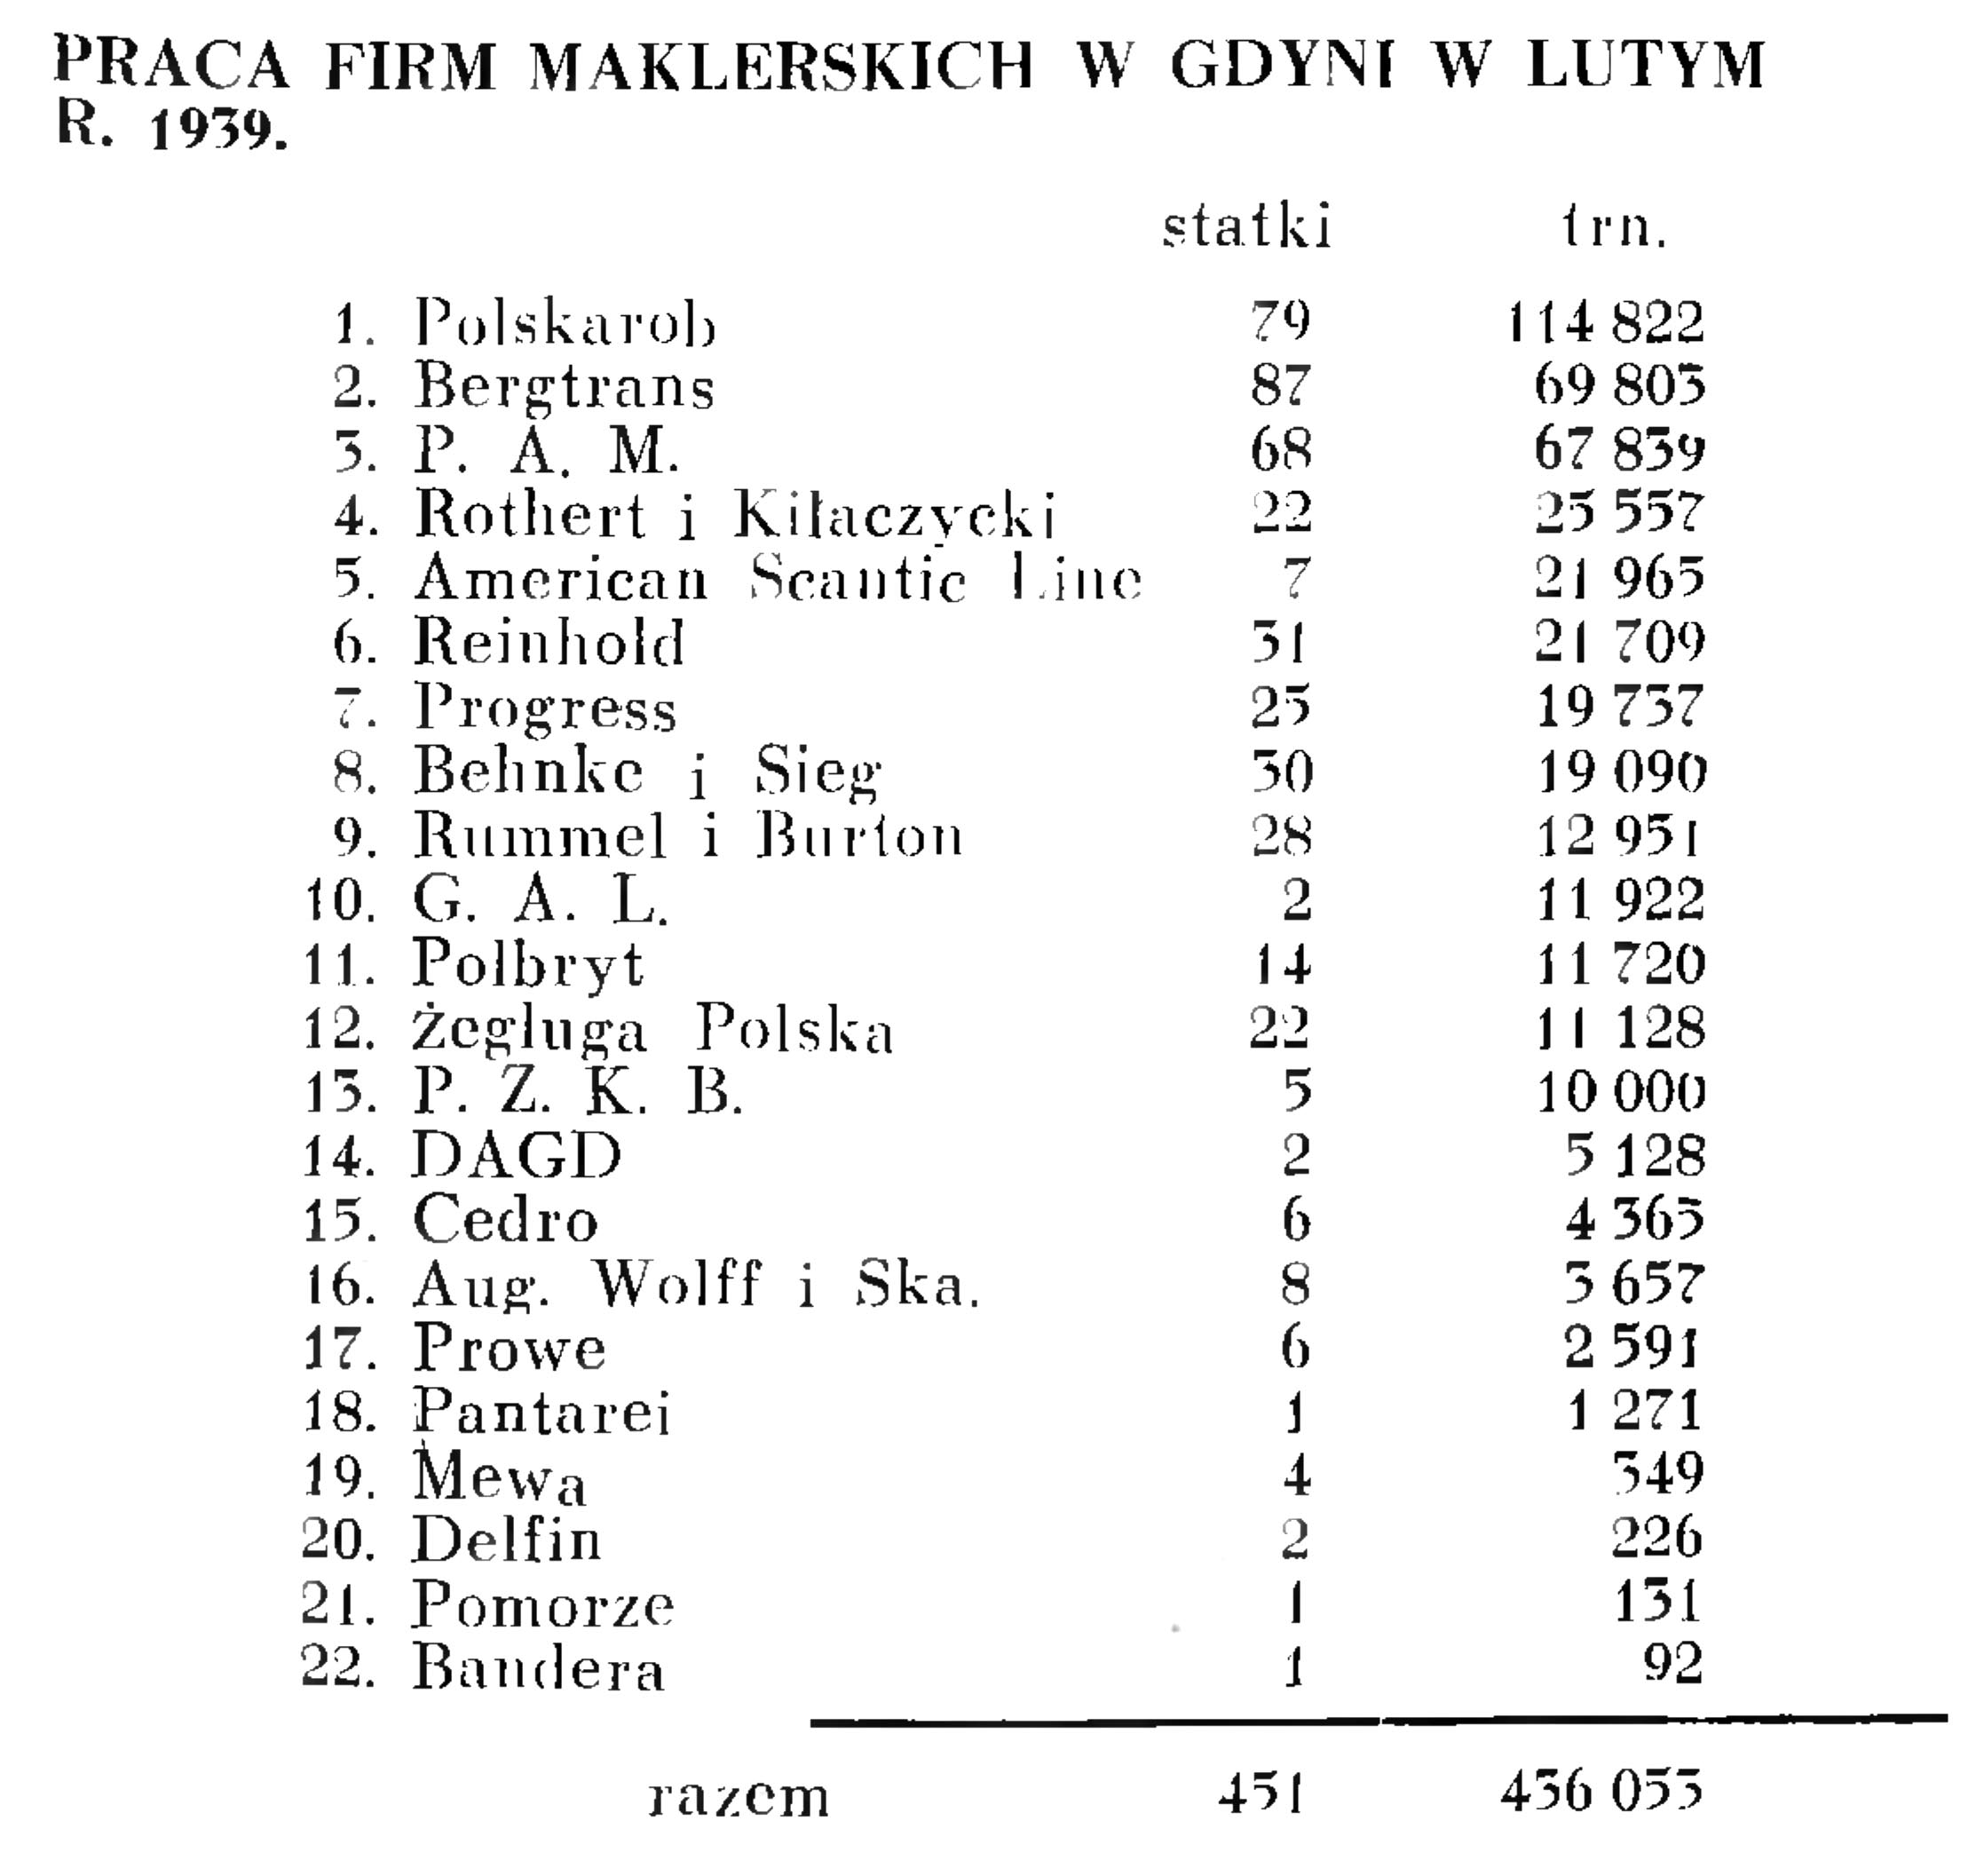 Praca firm maklerskich w Gdyni w lutym r. 1939 // Wiadomości Portowe. - 1939, nr 3, s. 17